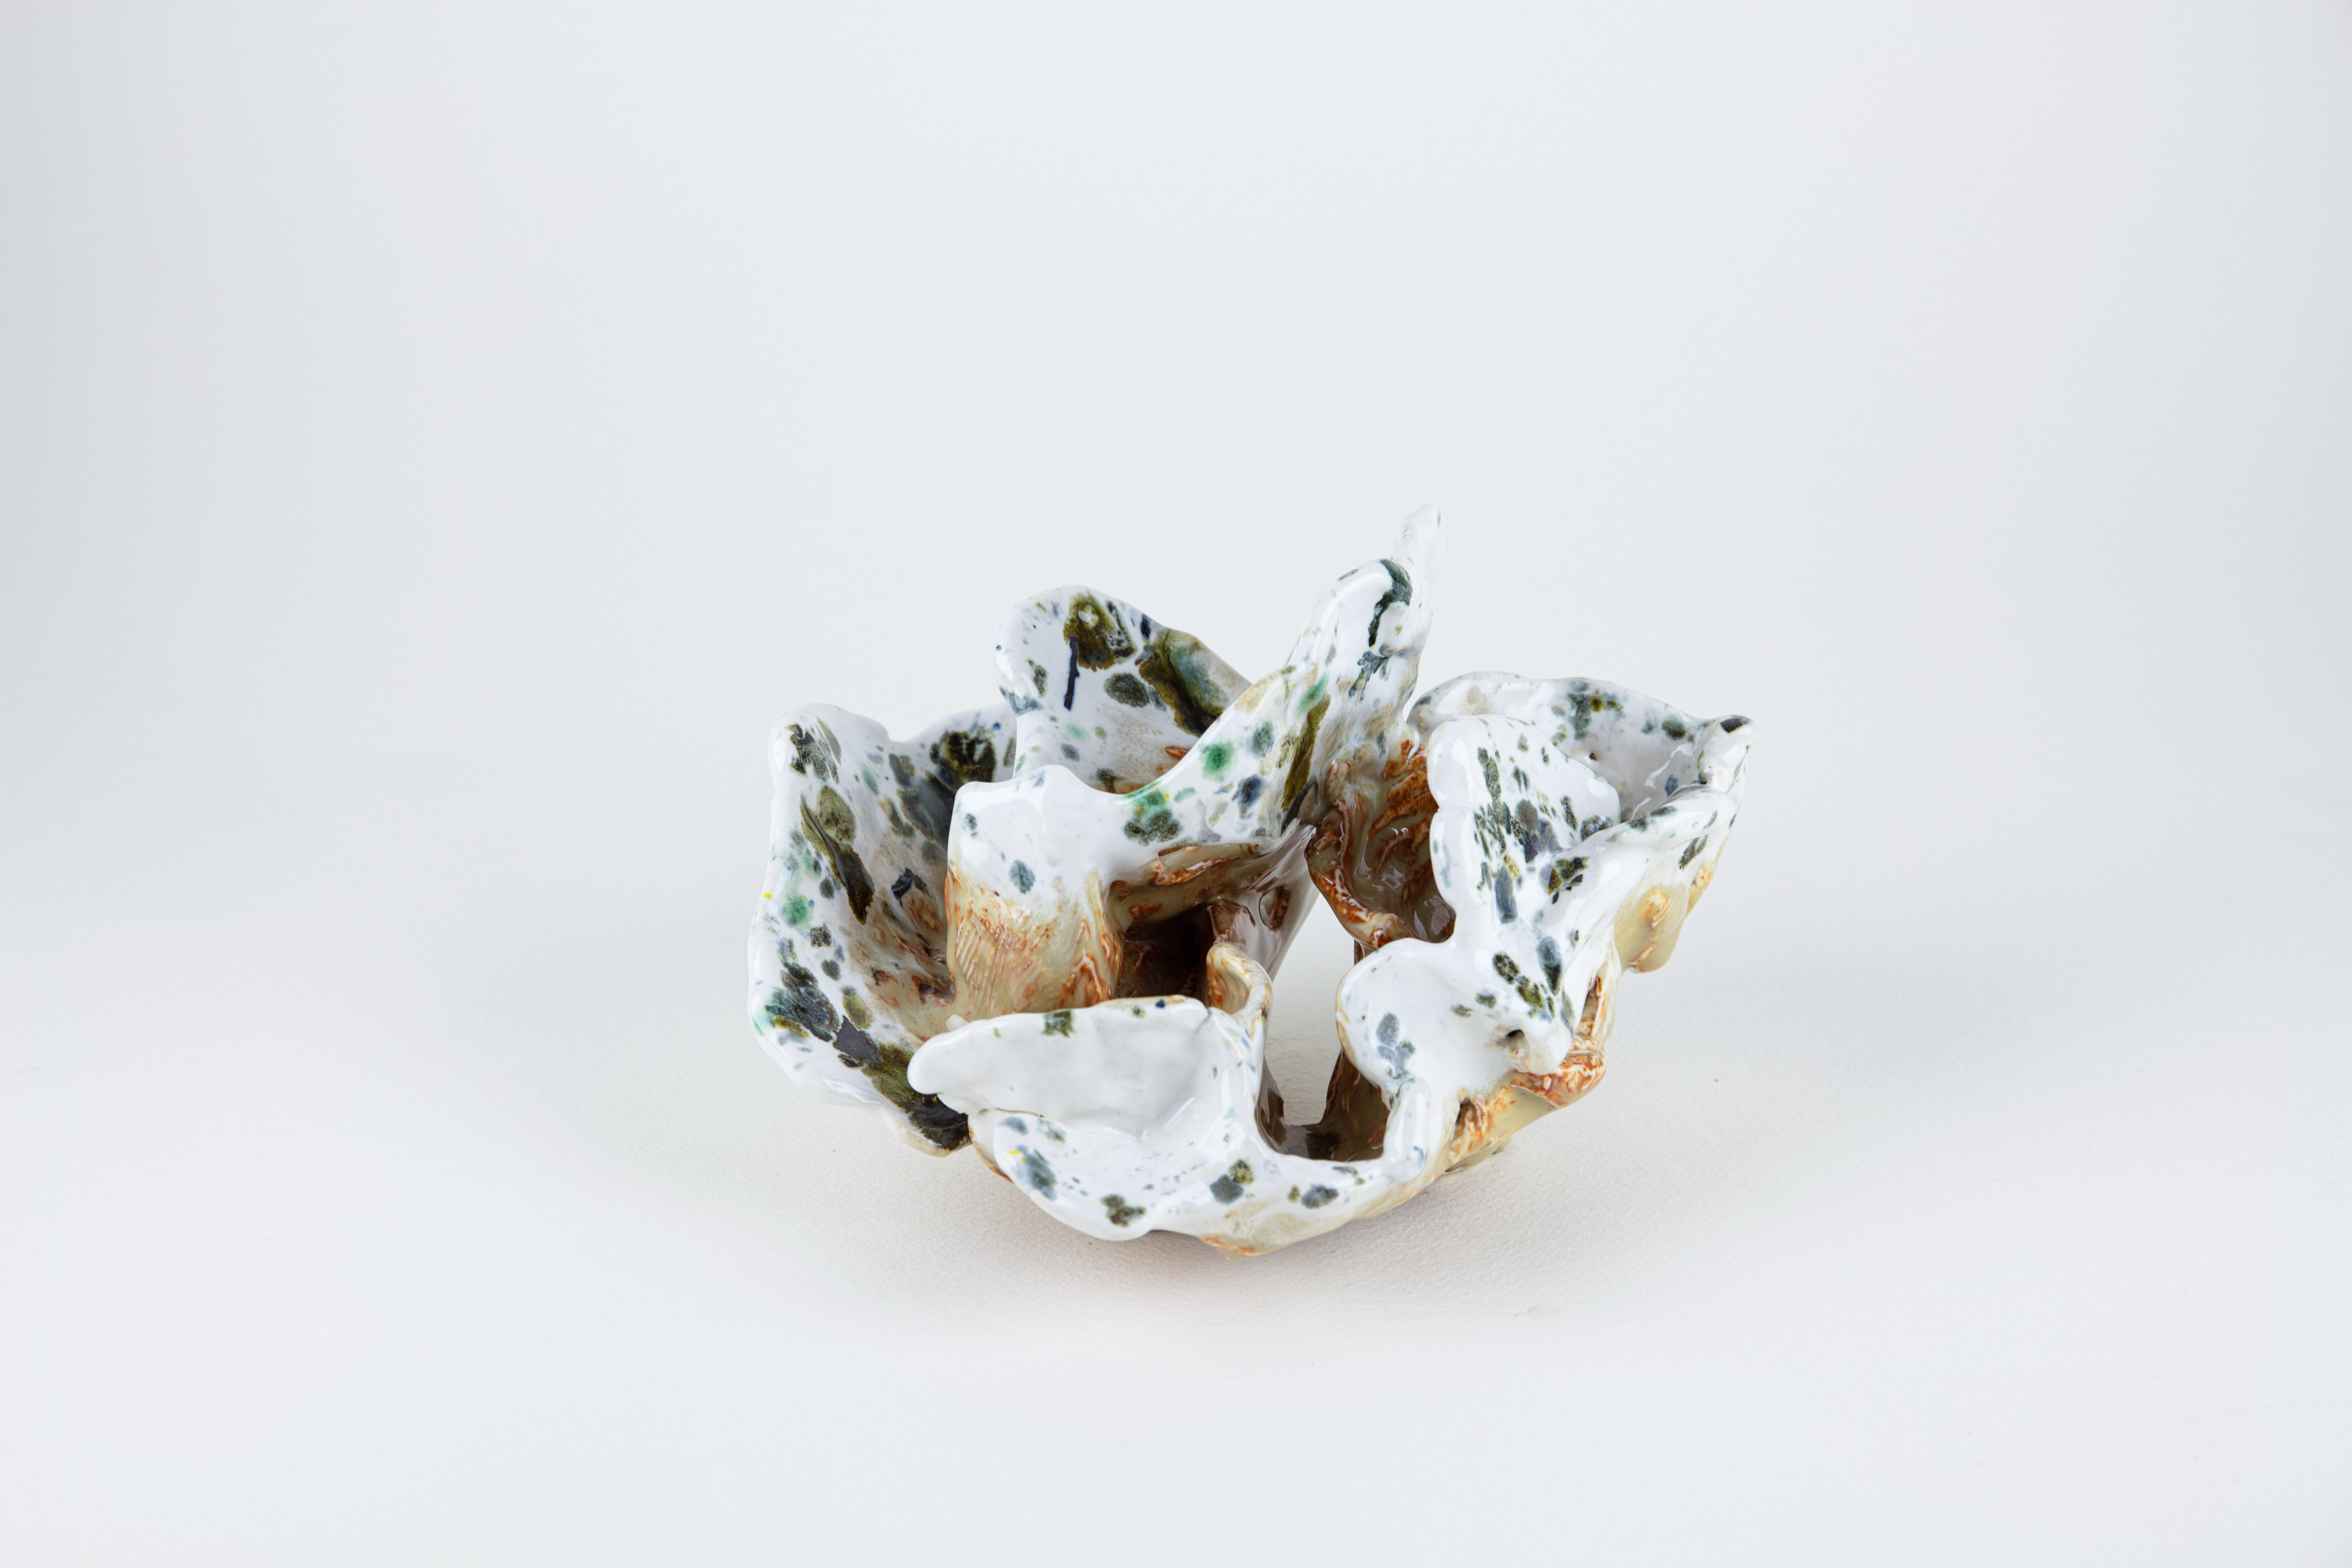 Rachelle Krieger Still-Life Sculpture - Lichen 1, Abstract ceramic sculpture, green and beige